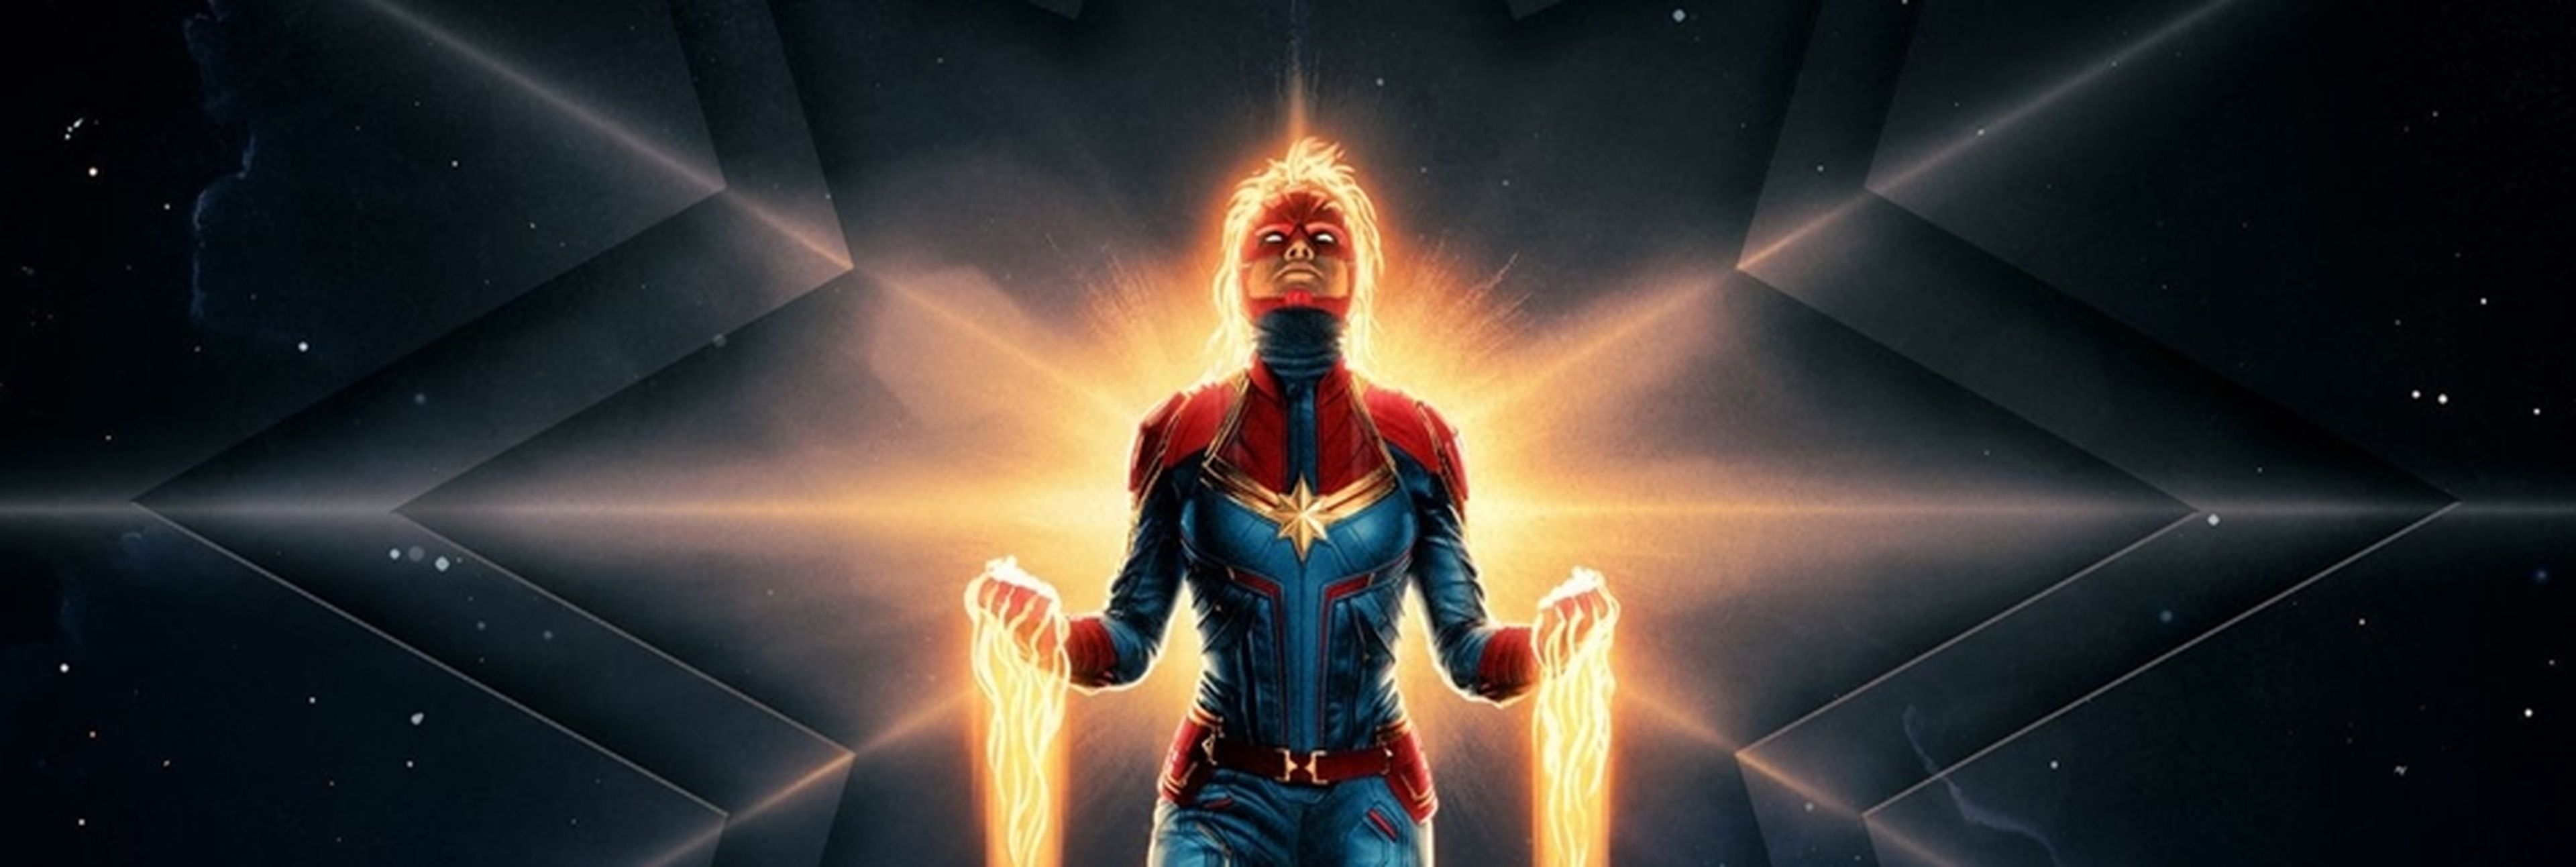 Capitana Marvel - Nuevo póster con la protagonista volando